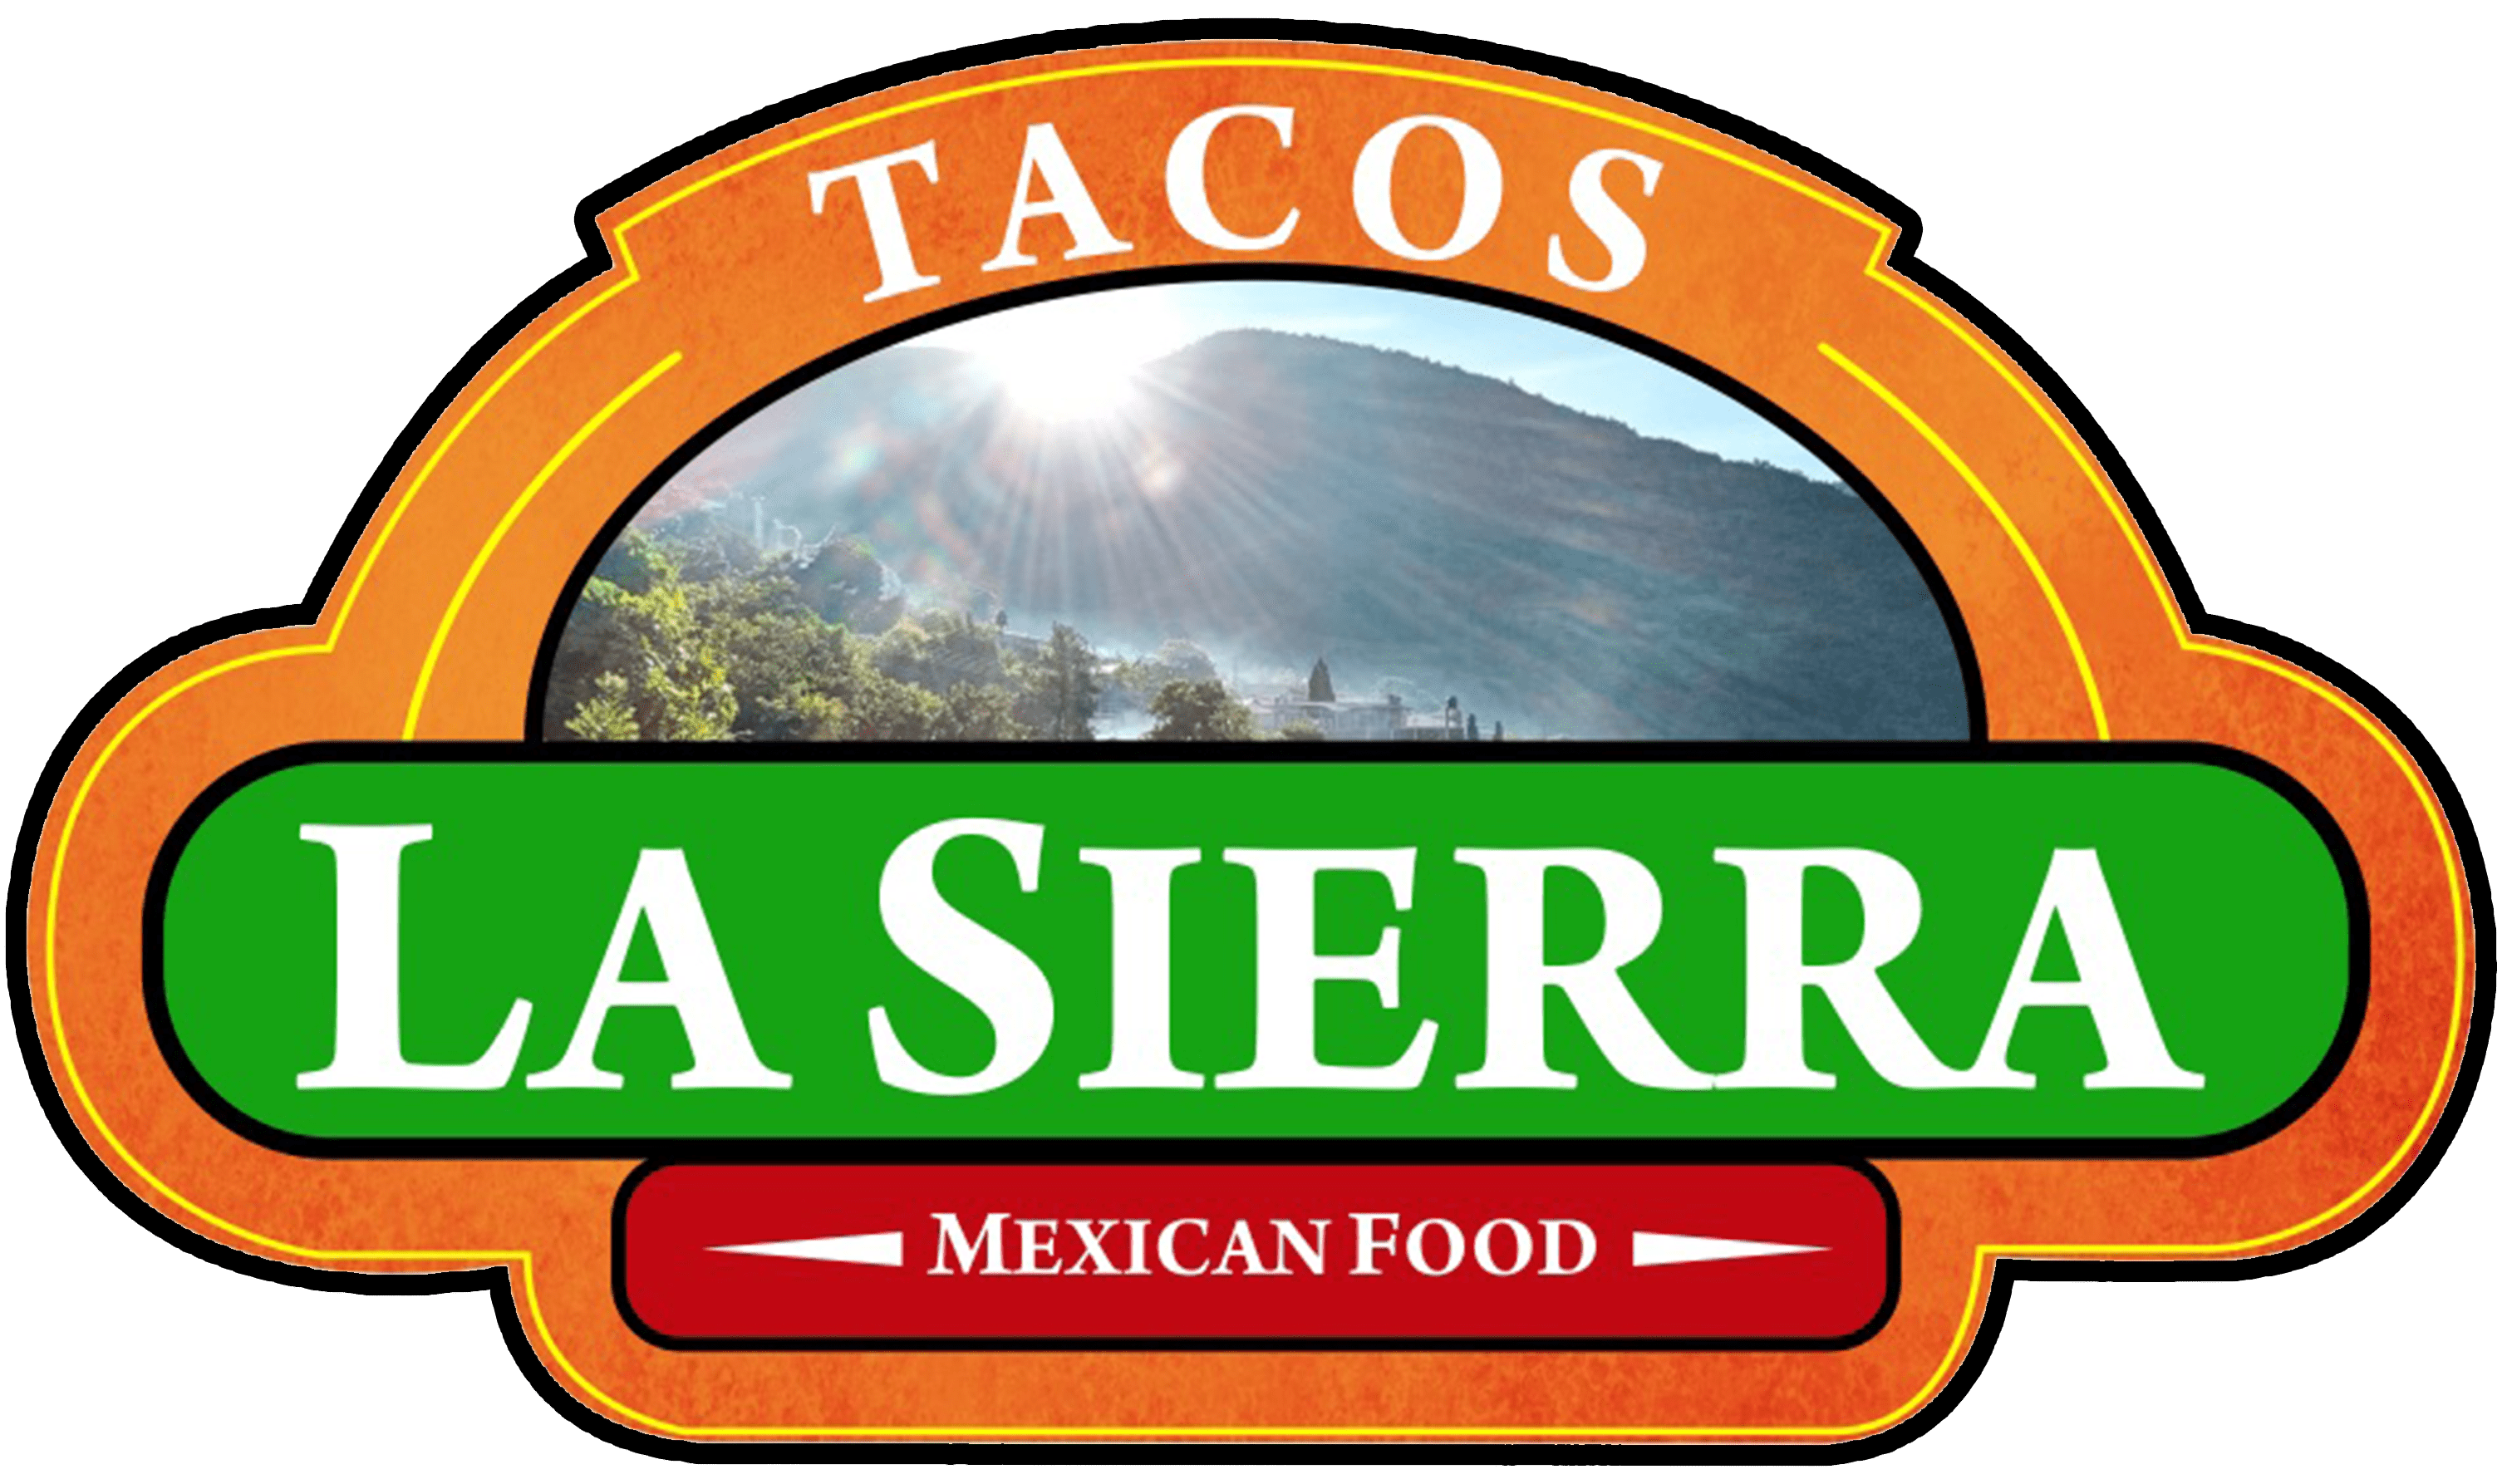 La Sierra Tacos